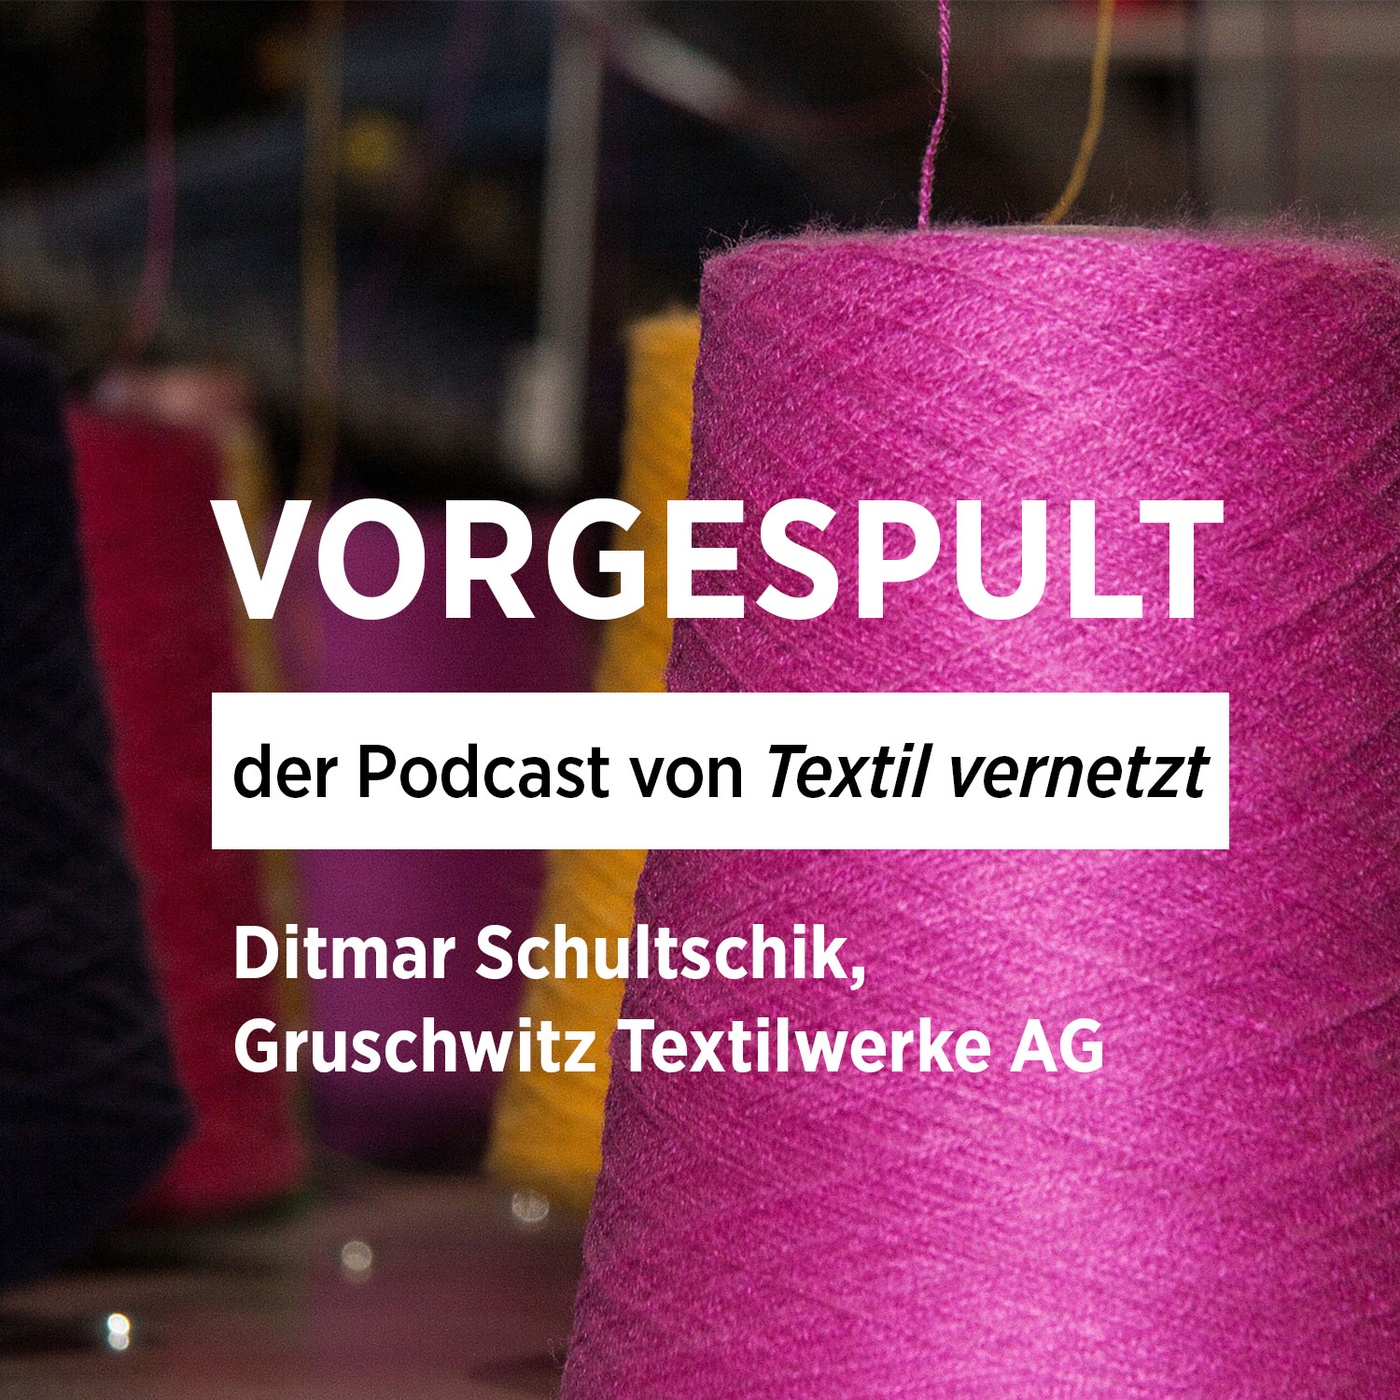 Digitalisierungs-Roadmap für die Gruschwitz Textilwerke